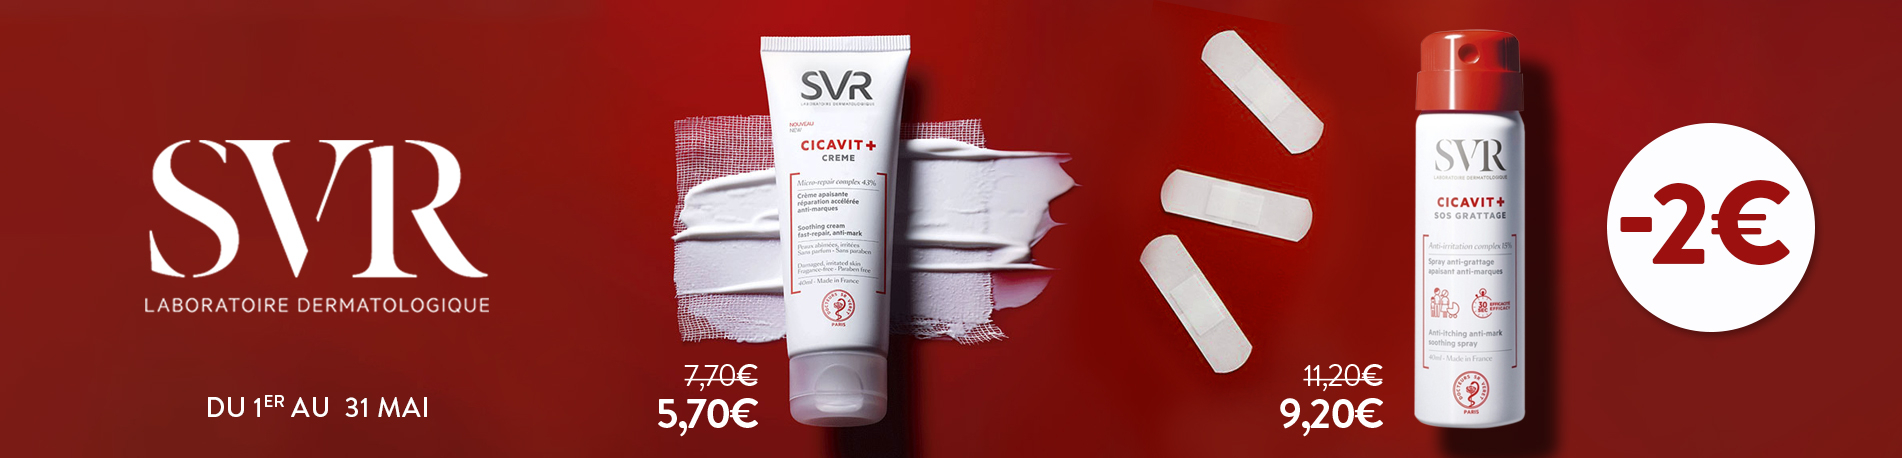 Promotion SVR Cicavit+